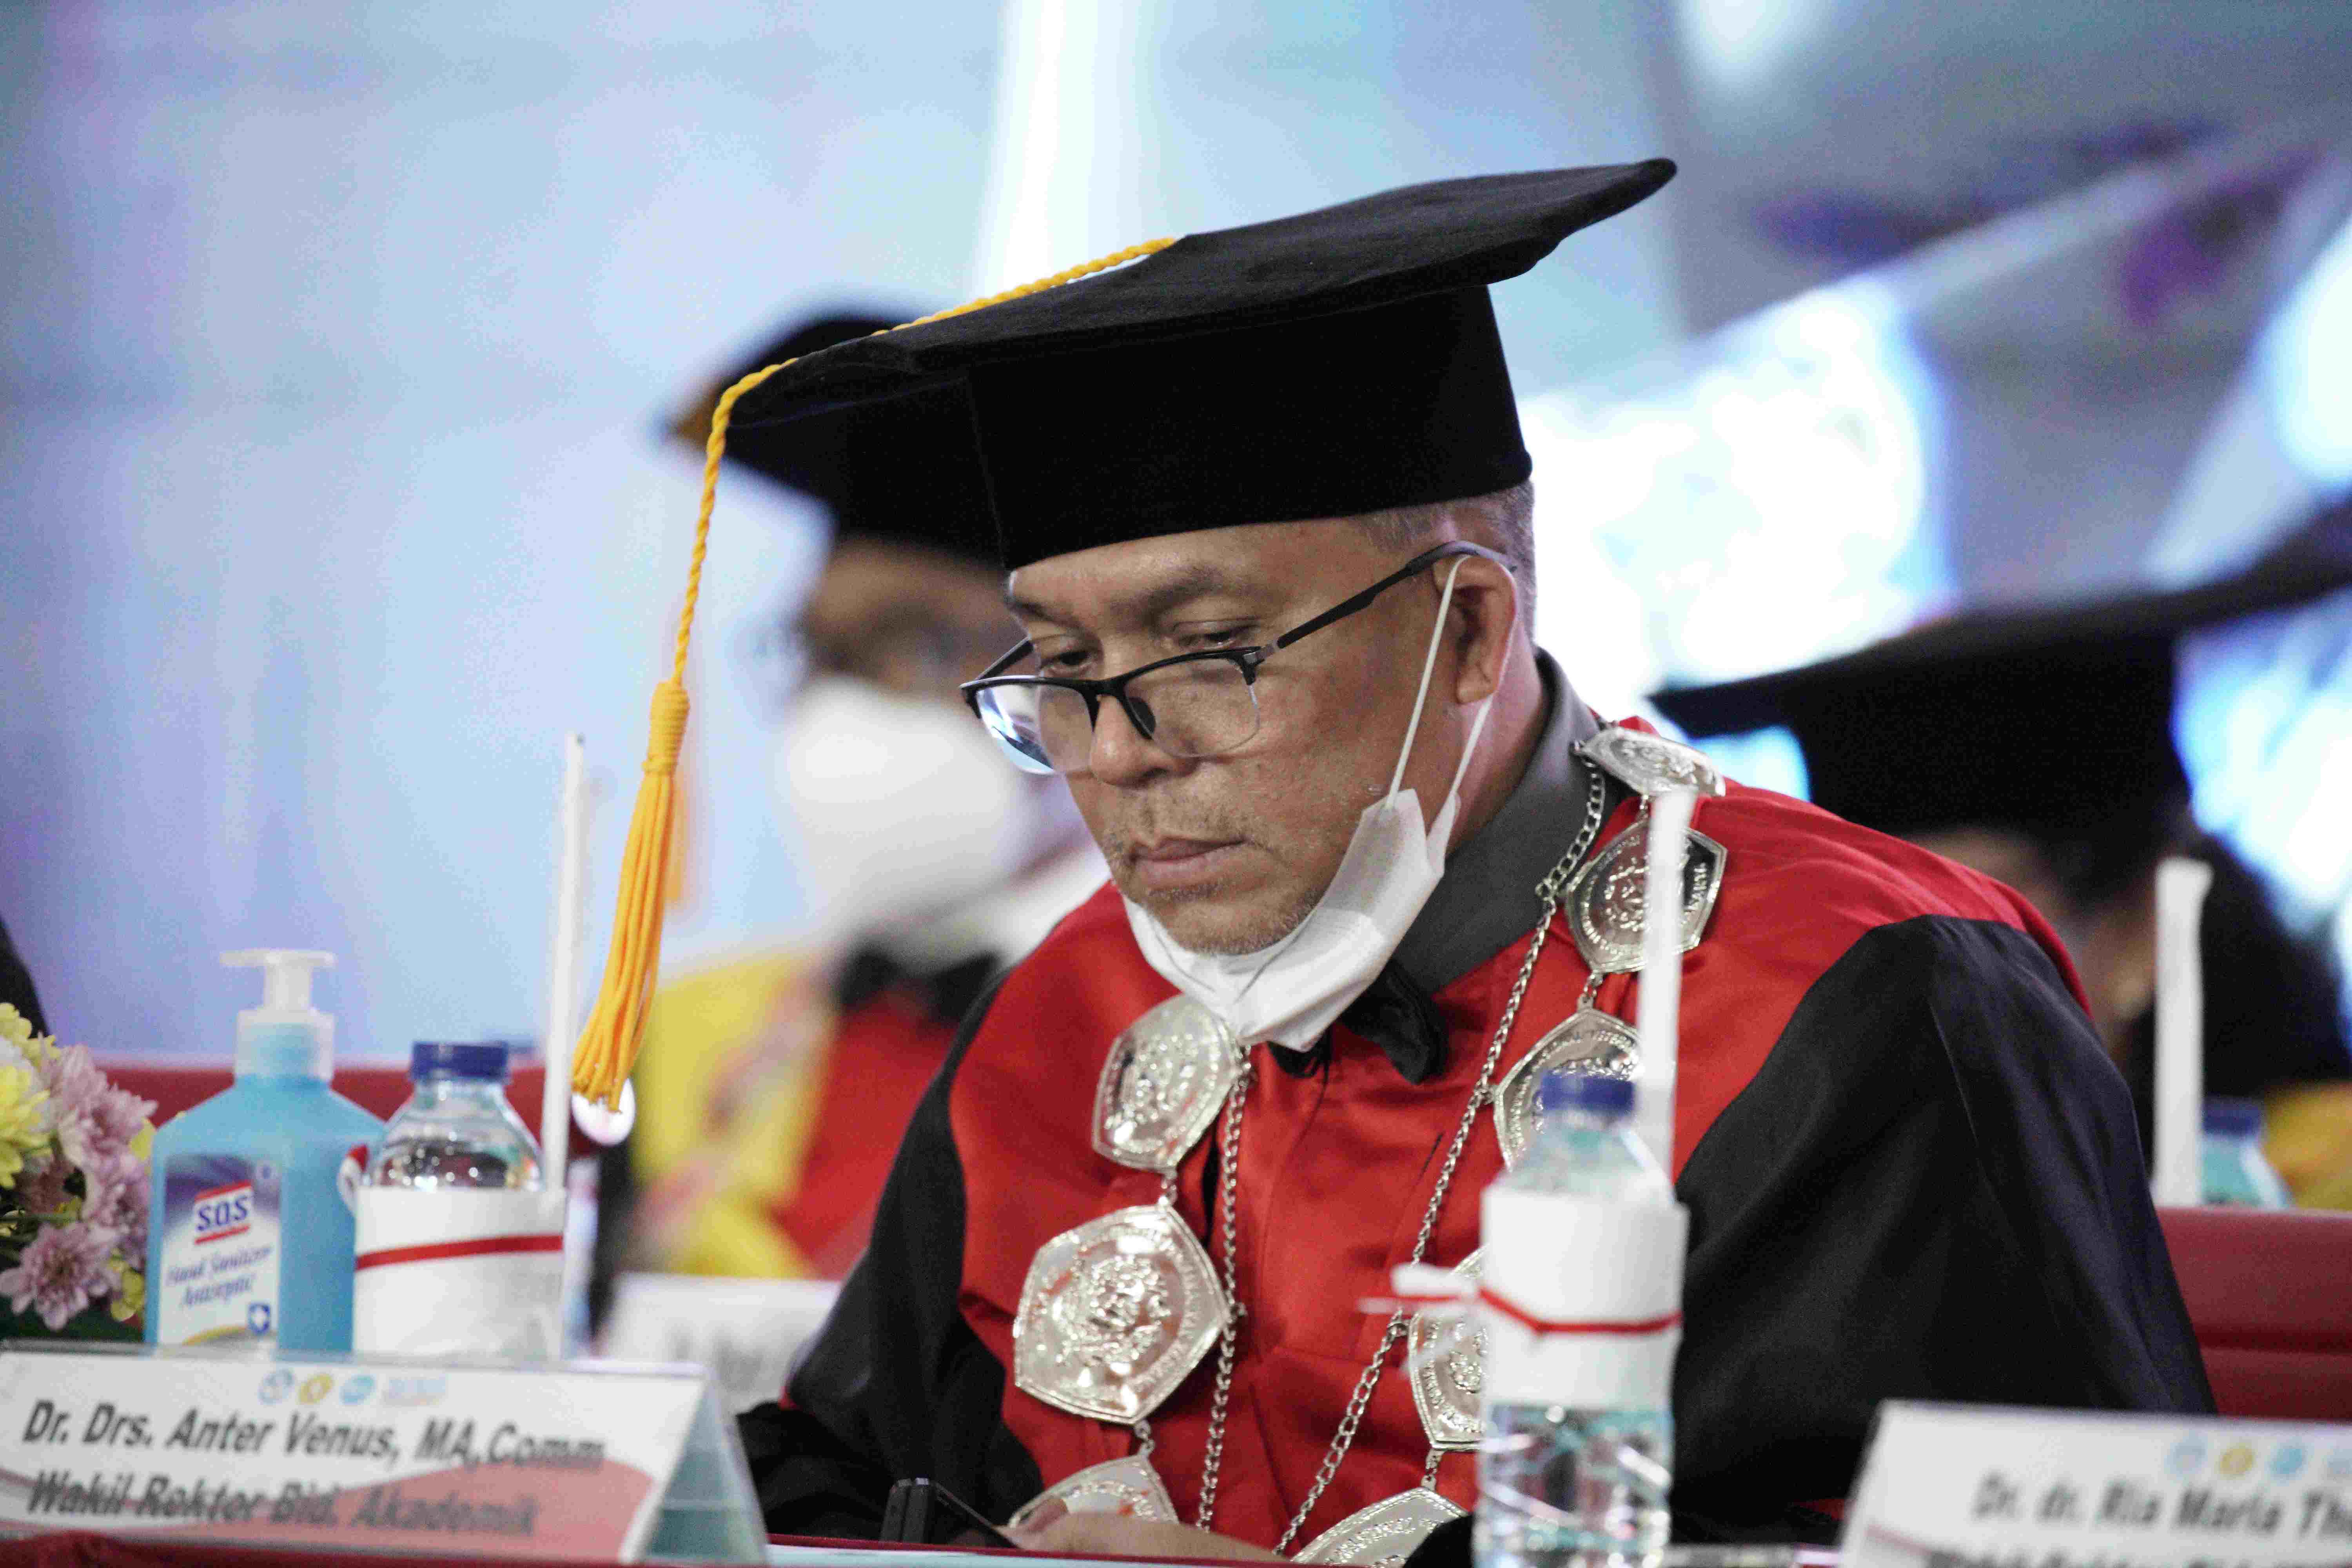 Pengukuhan Prof Dr Wicipto Setiadi SH MH Guru Besar bidang Ilmu Hukum Fakultas Hukum Universitas Pembangunan Nasional Veteran Jakarta (245)